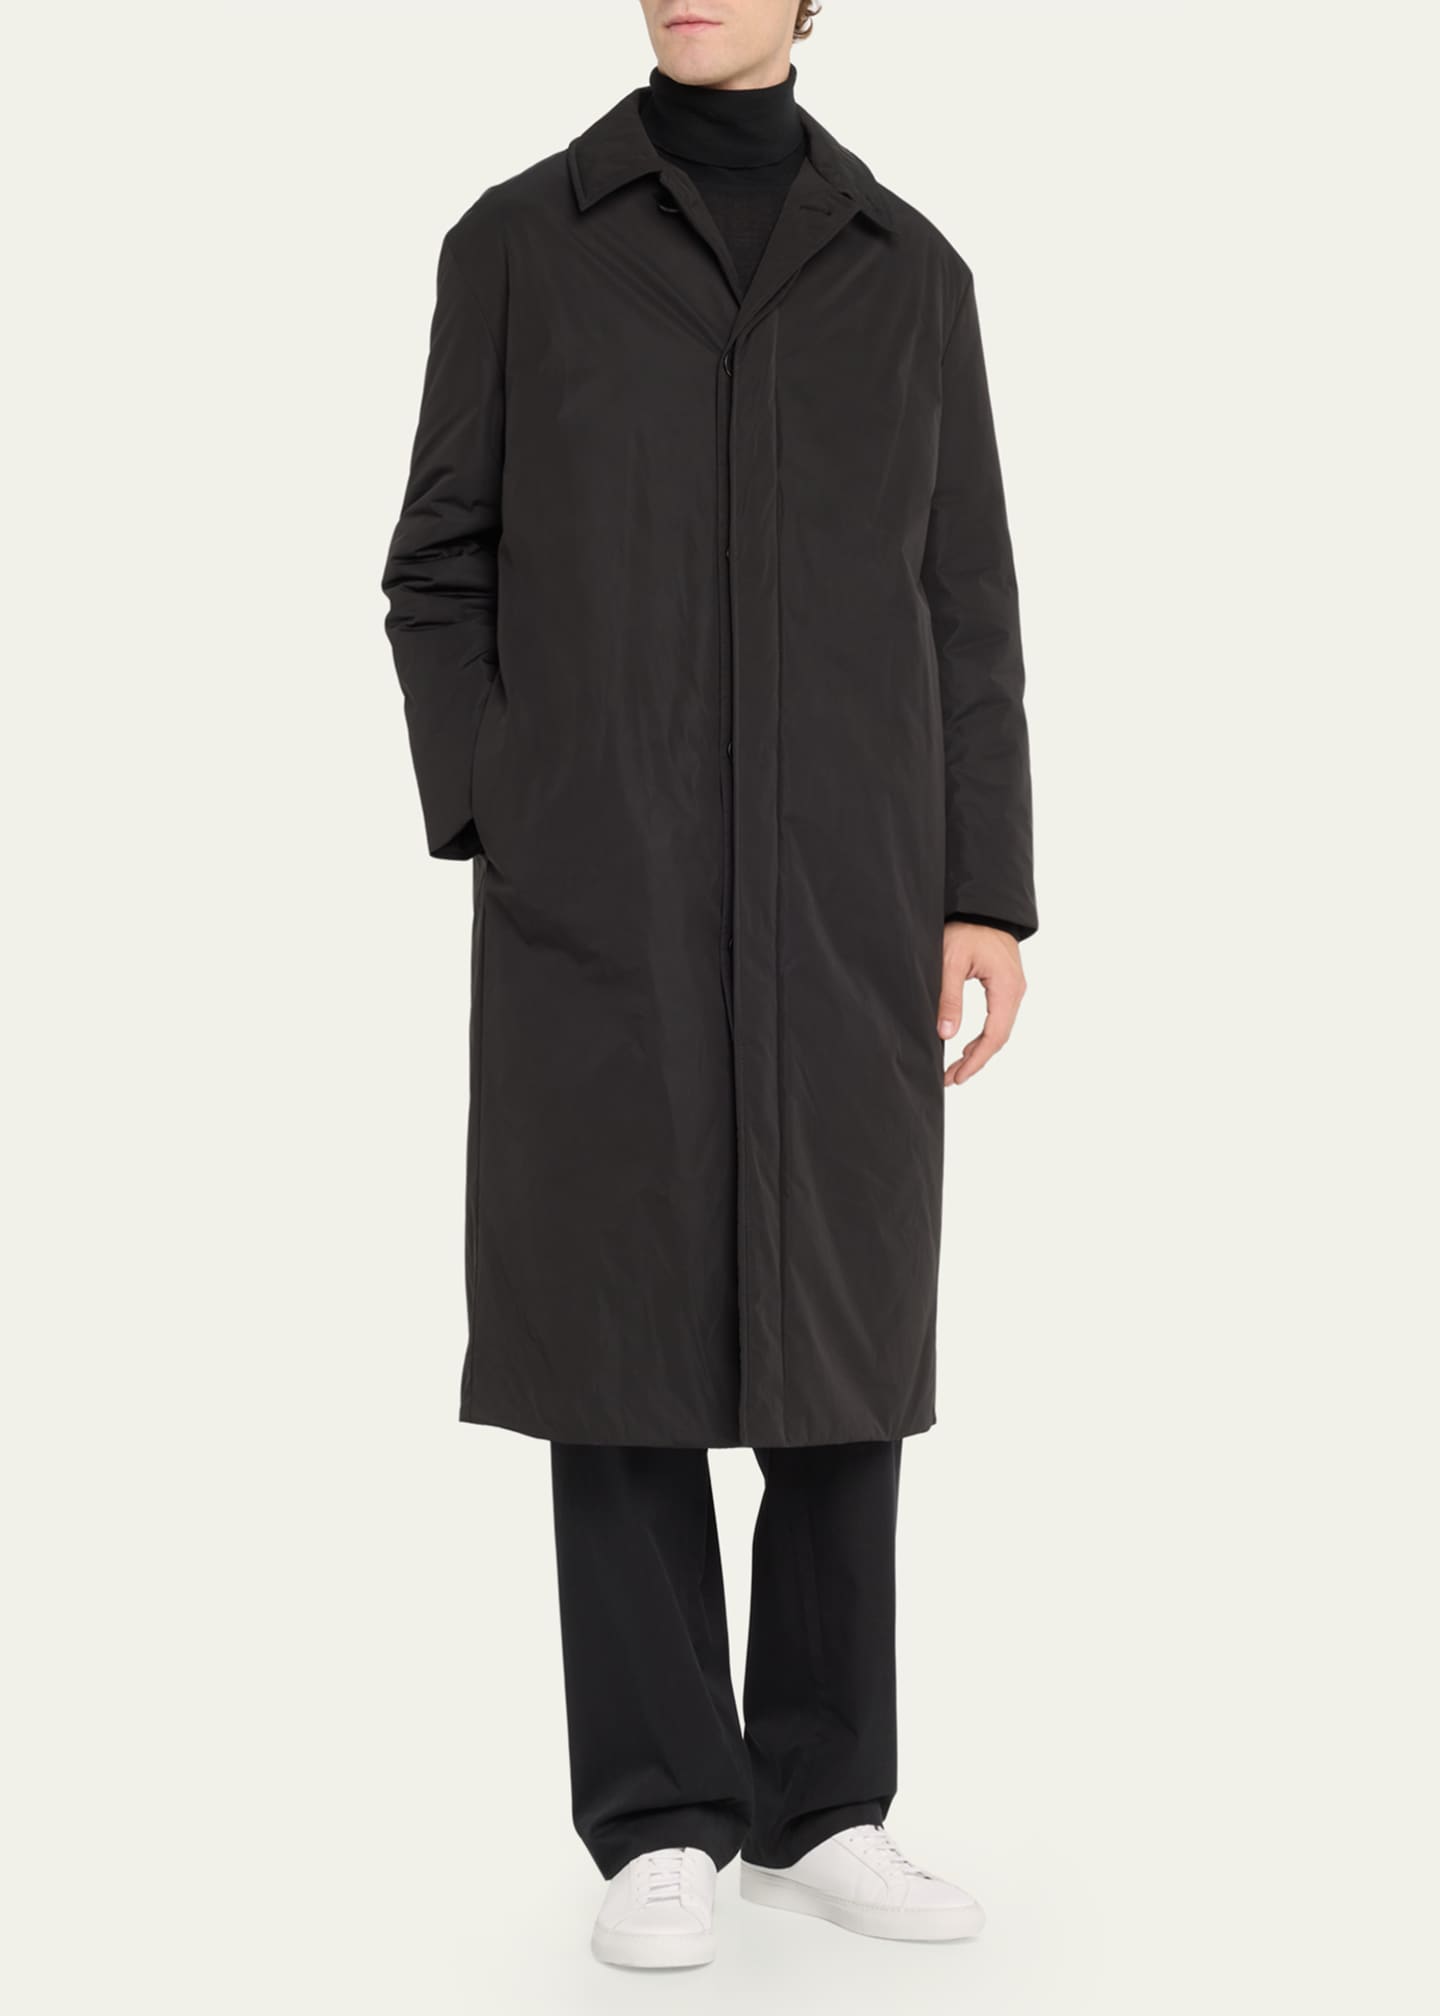 THE ROW Men's Django Solid Overcoat - Bergdorf Goodman